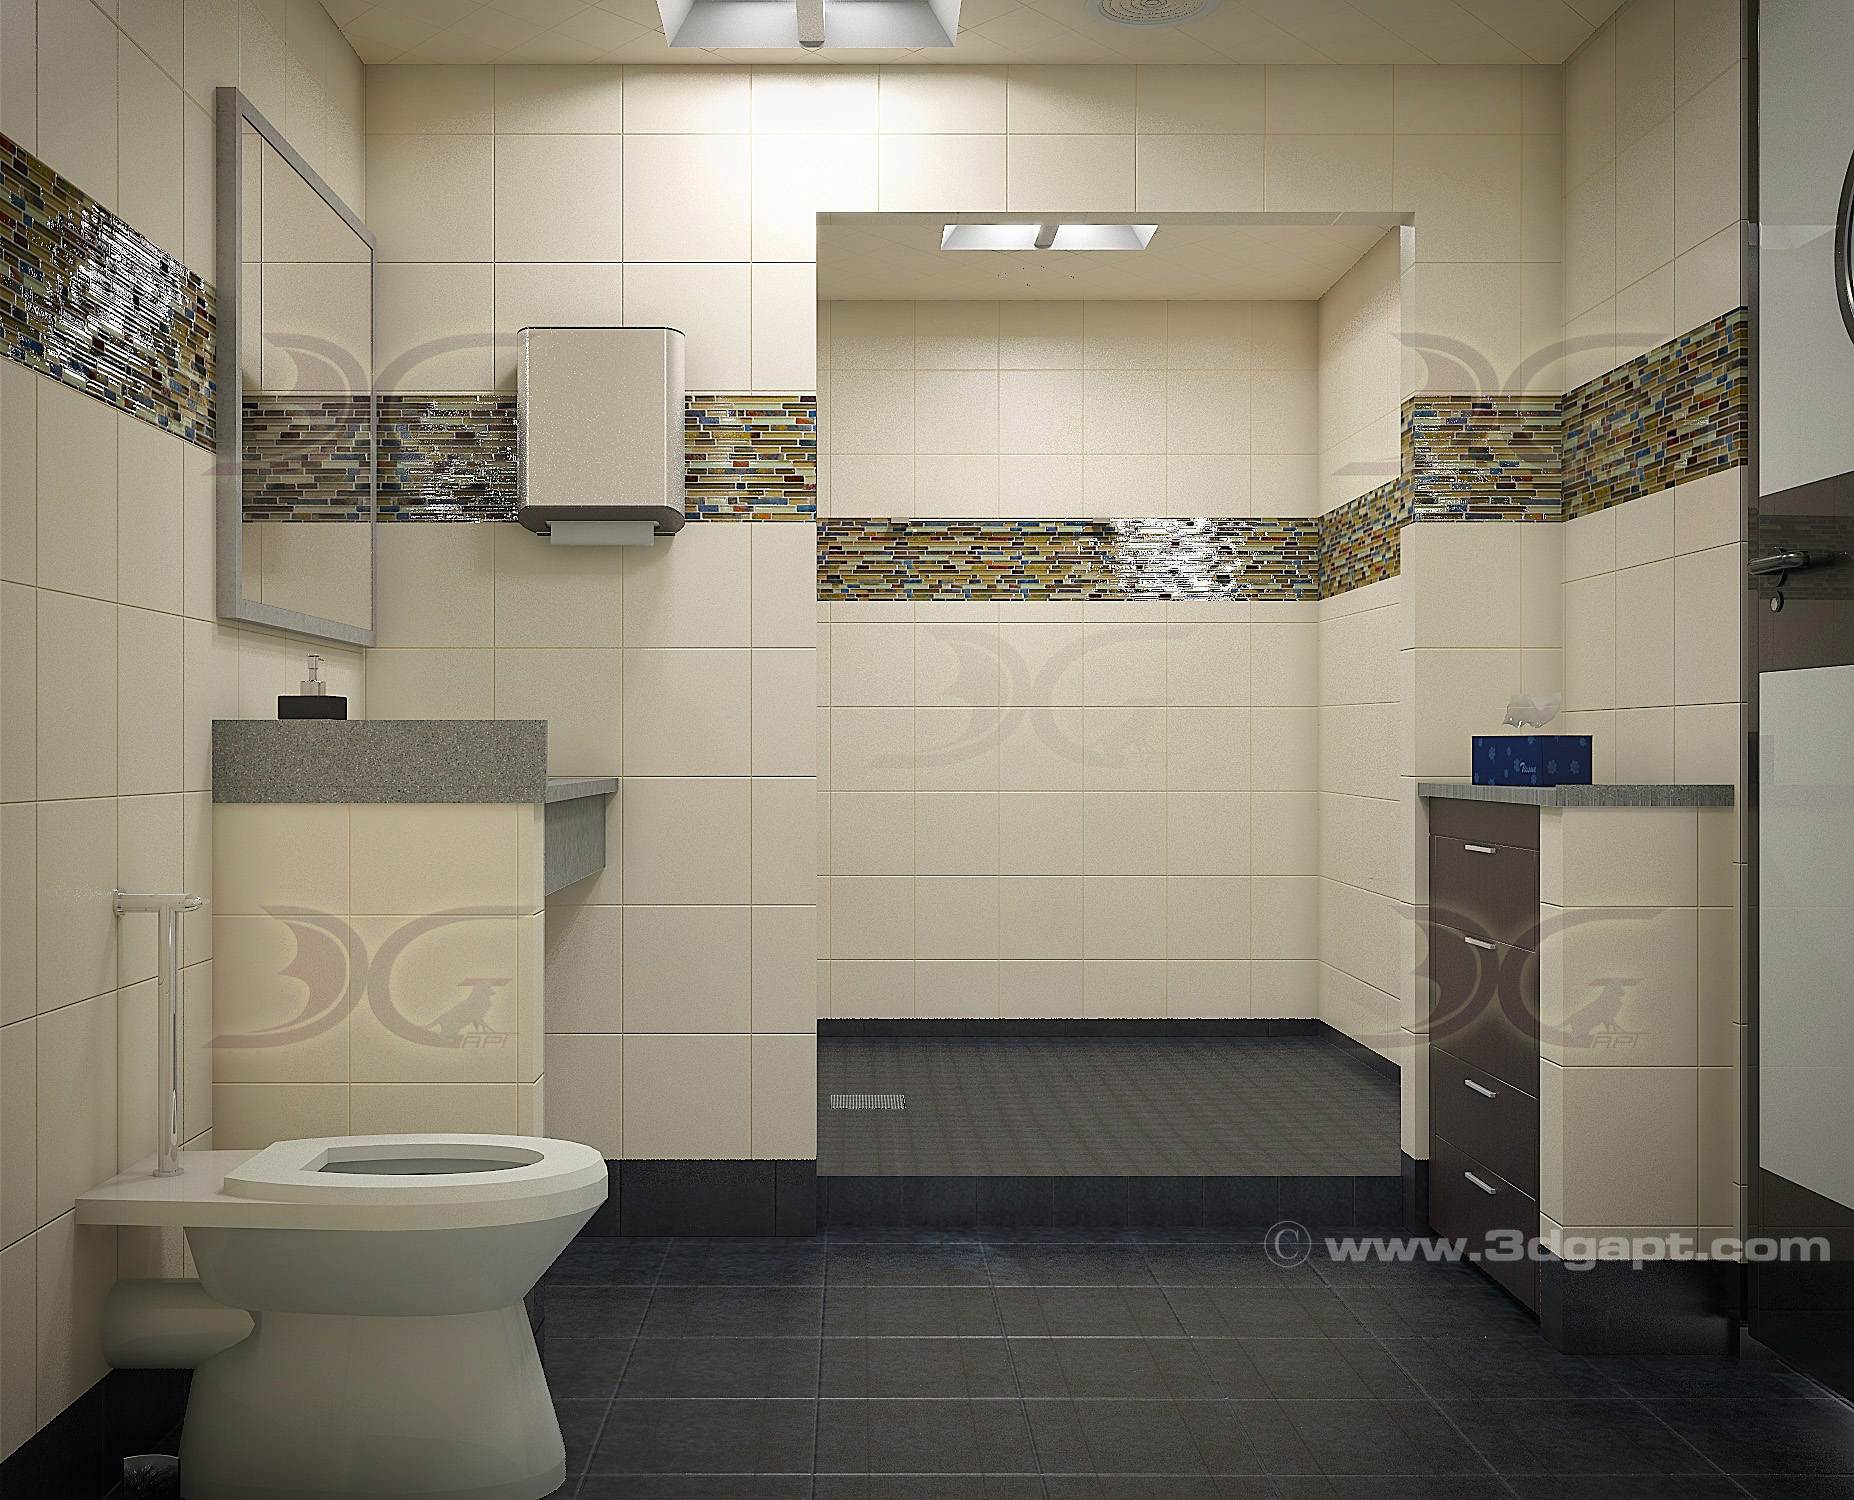 Architecture Interior Container Bathrooms0007